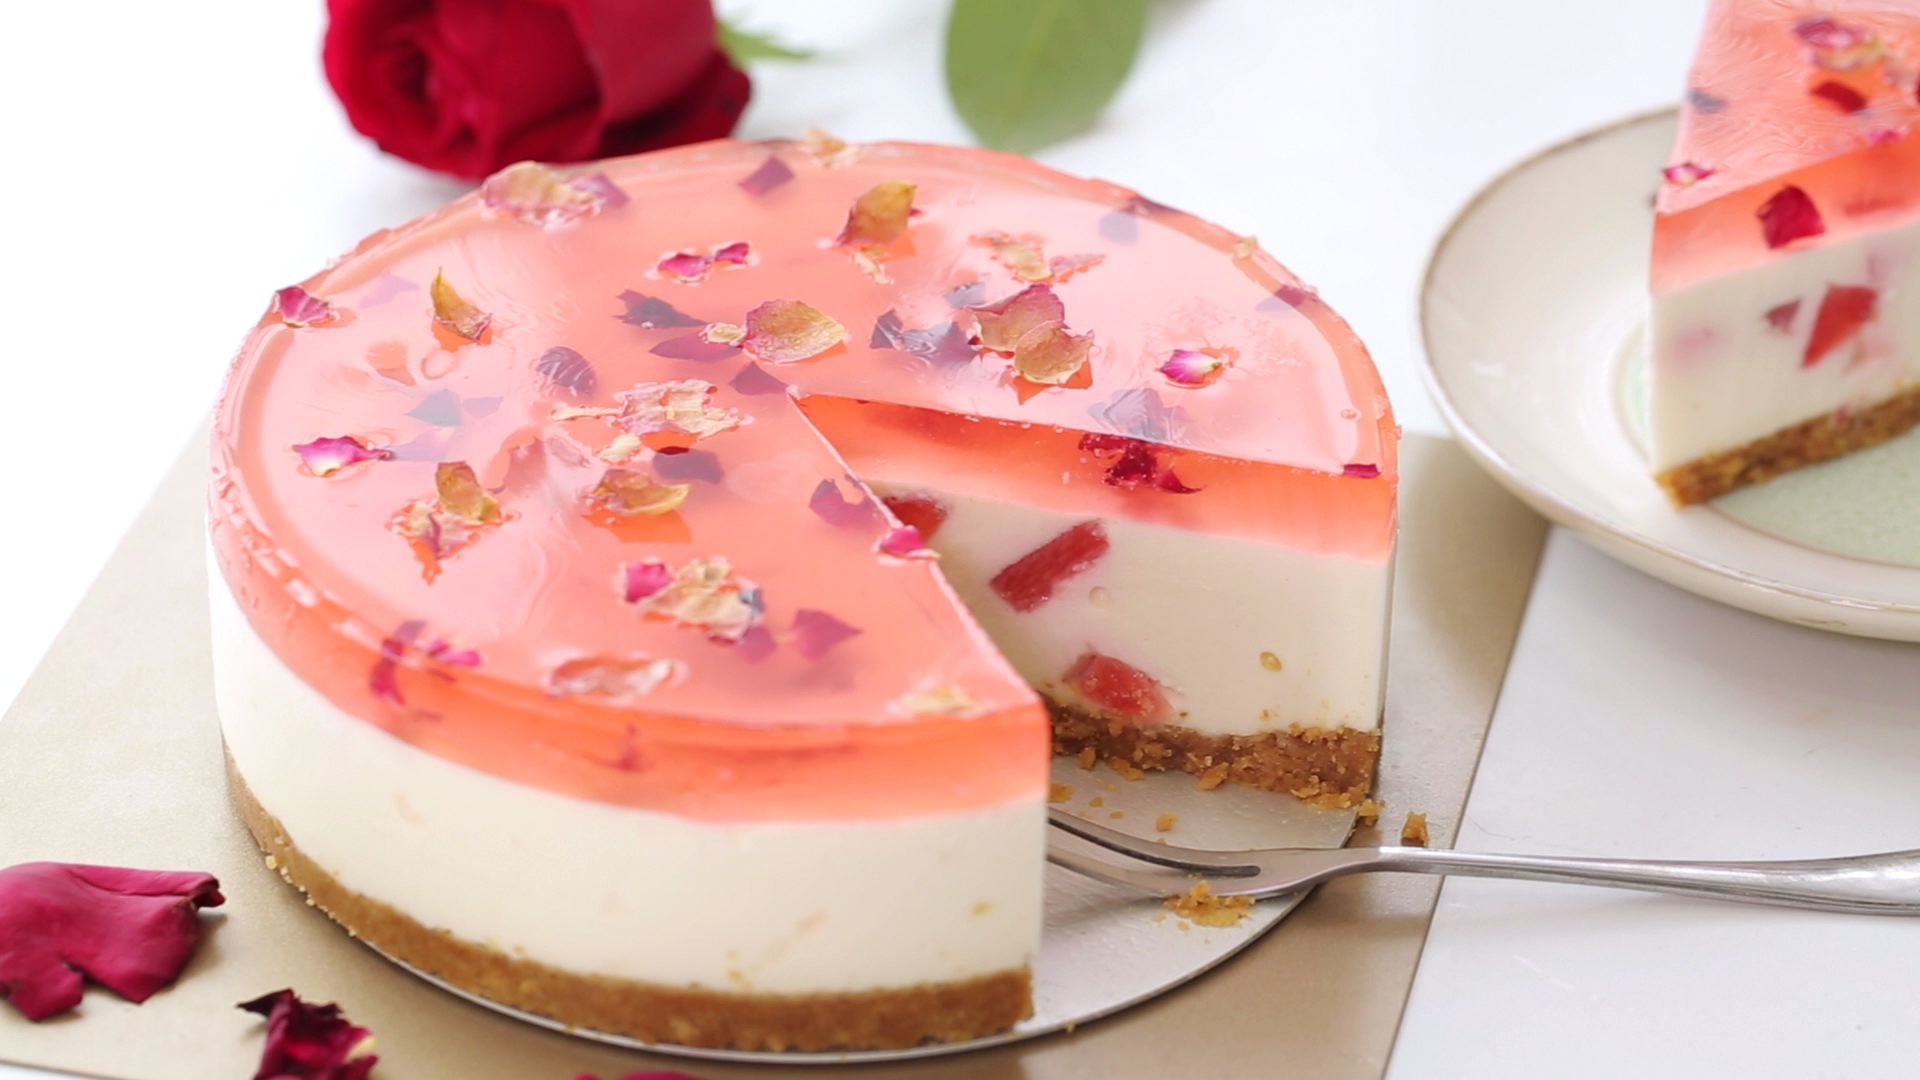 玫瑰芝士蛋糕的做法